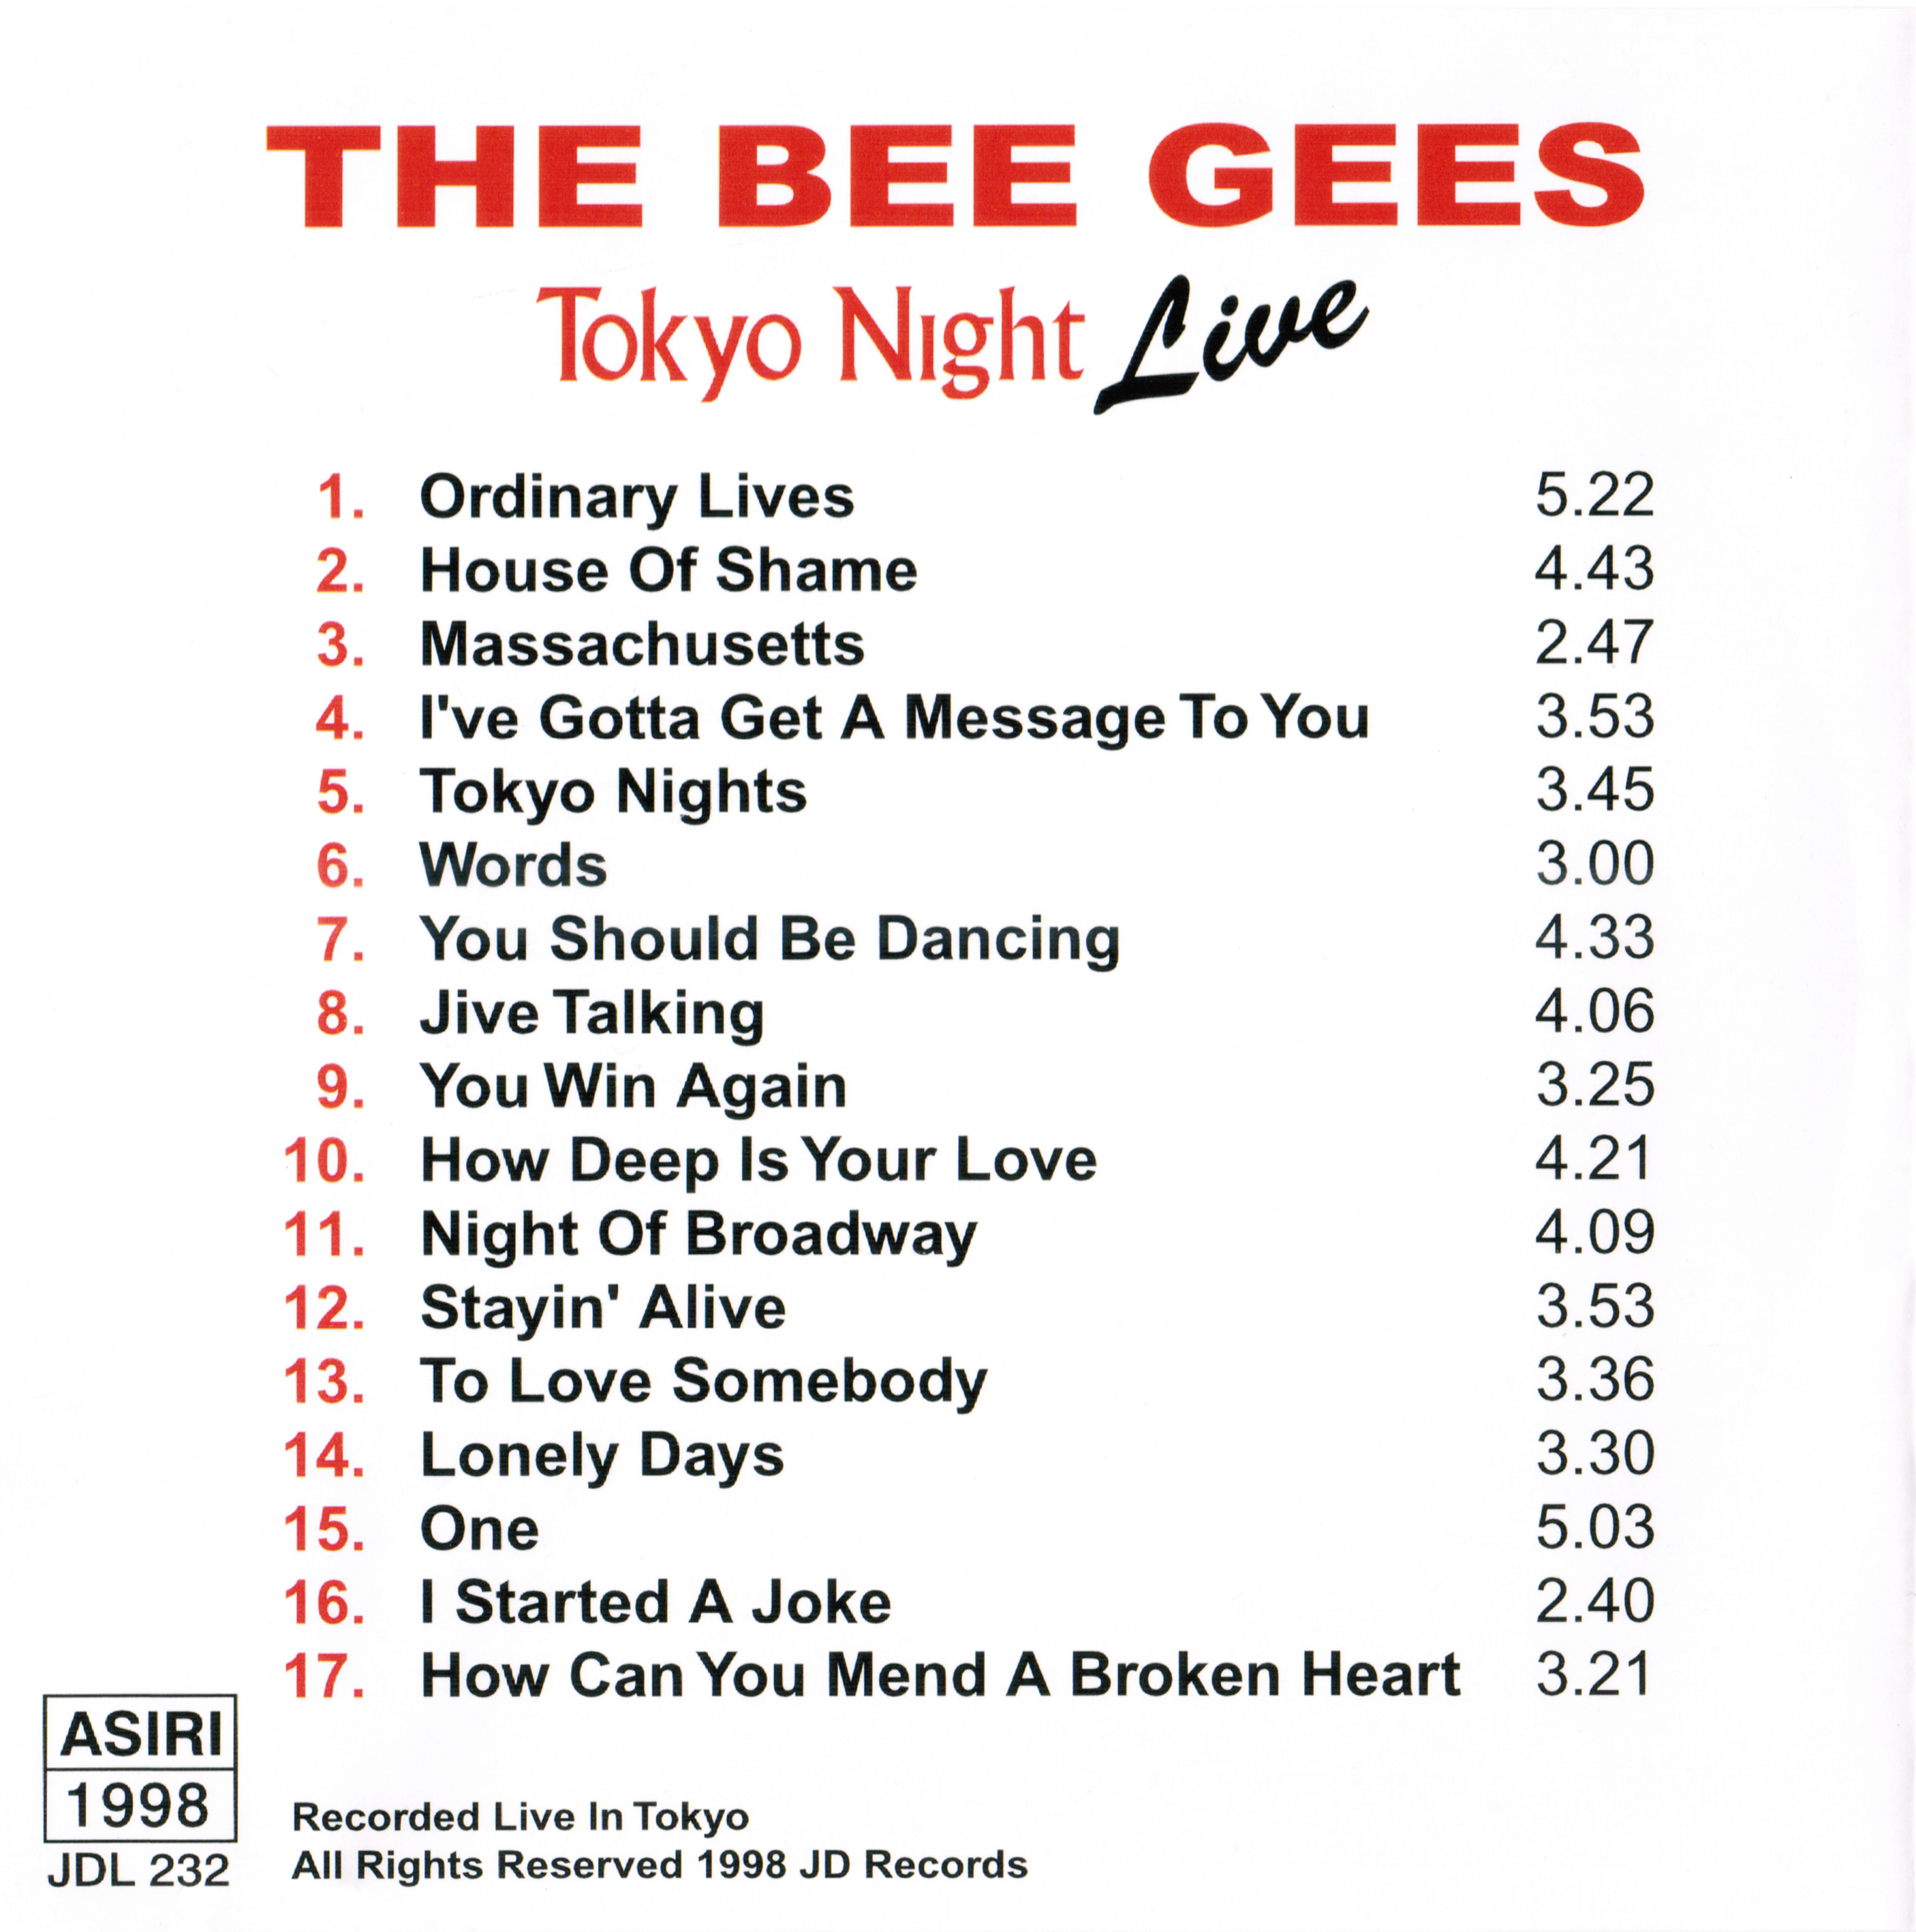 BeeGees1989-04-10TokyoJapan (3).png